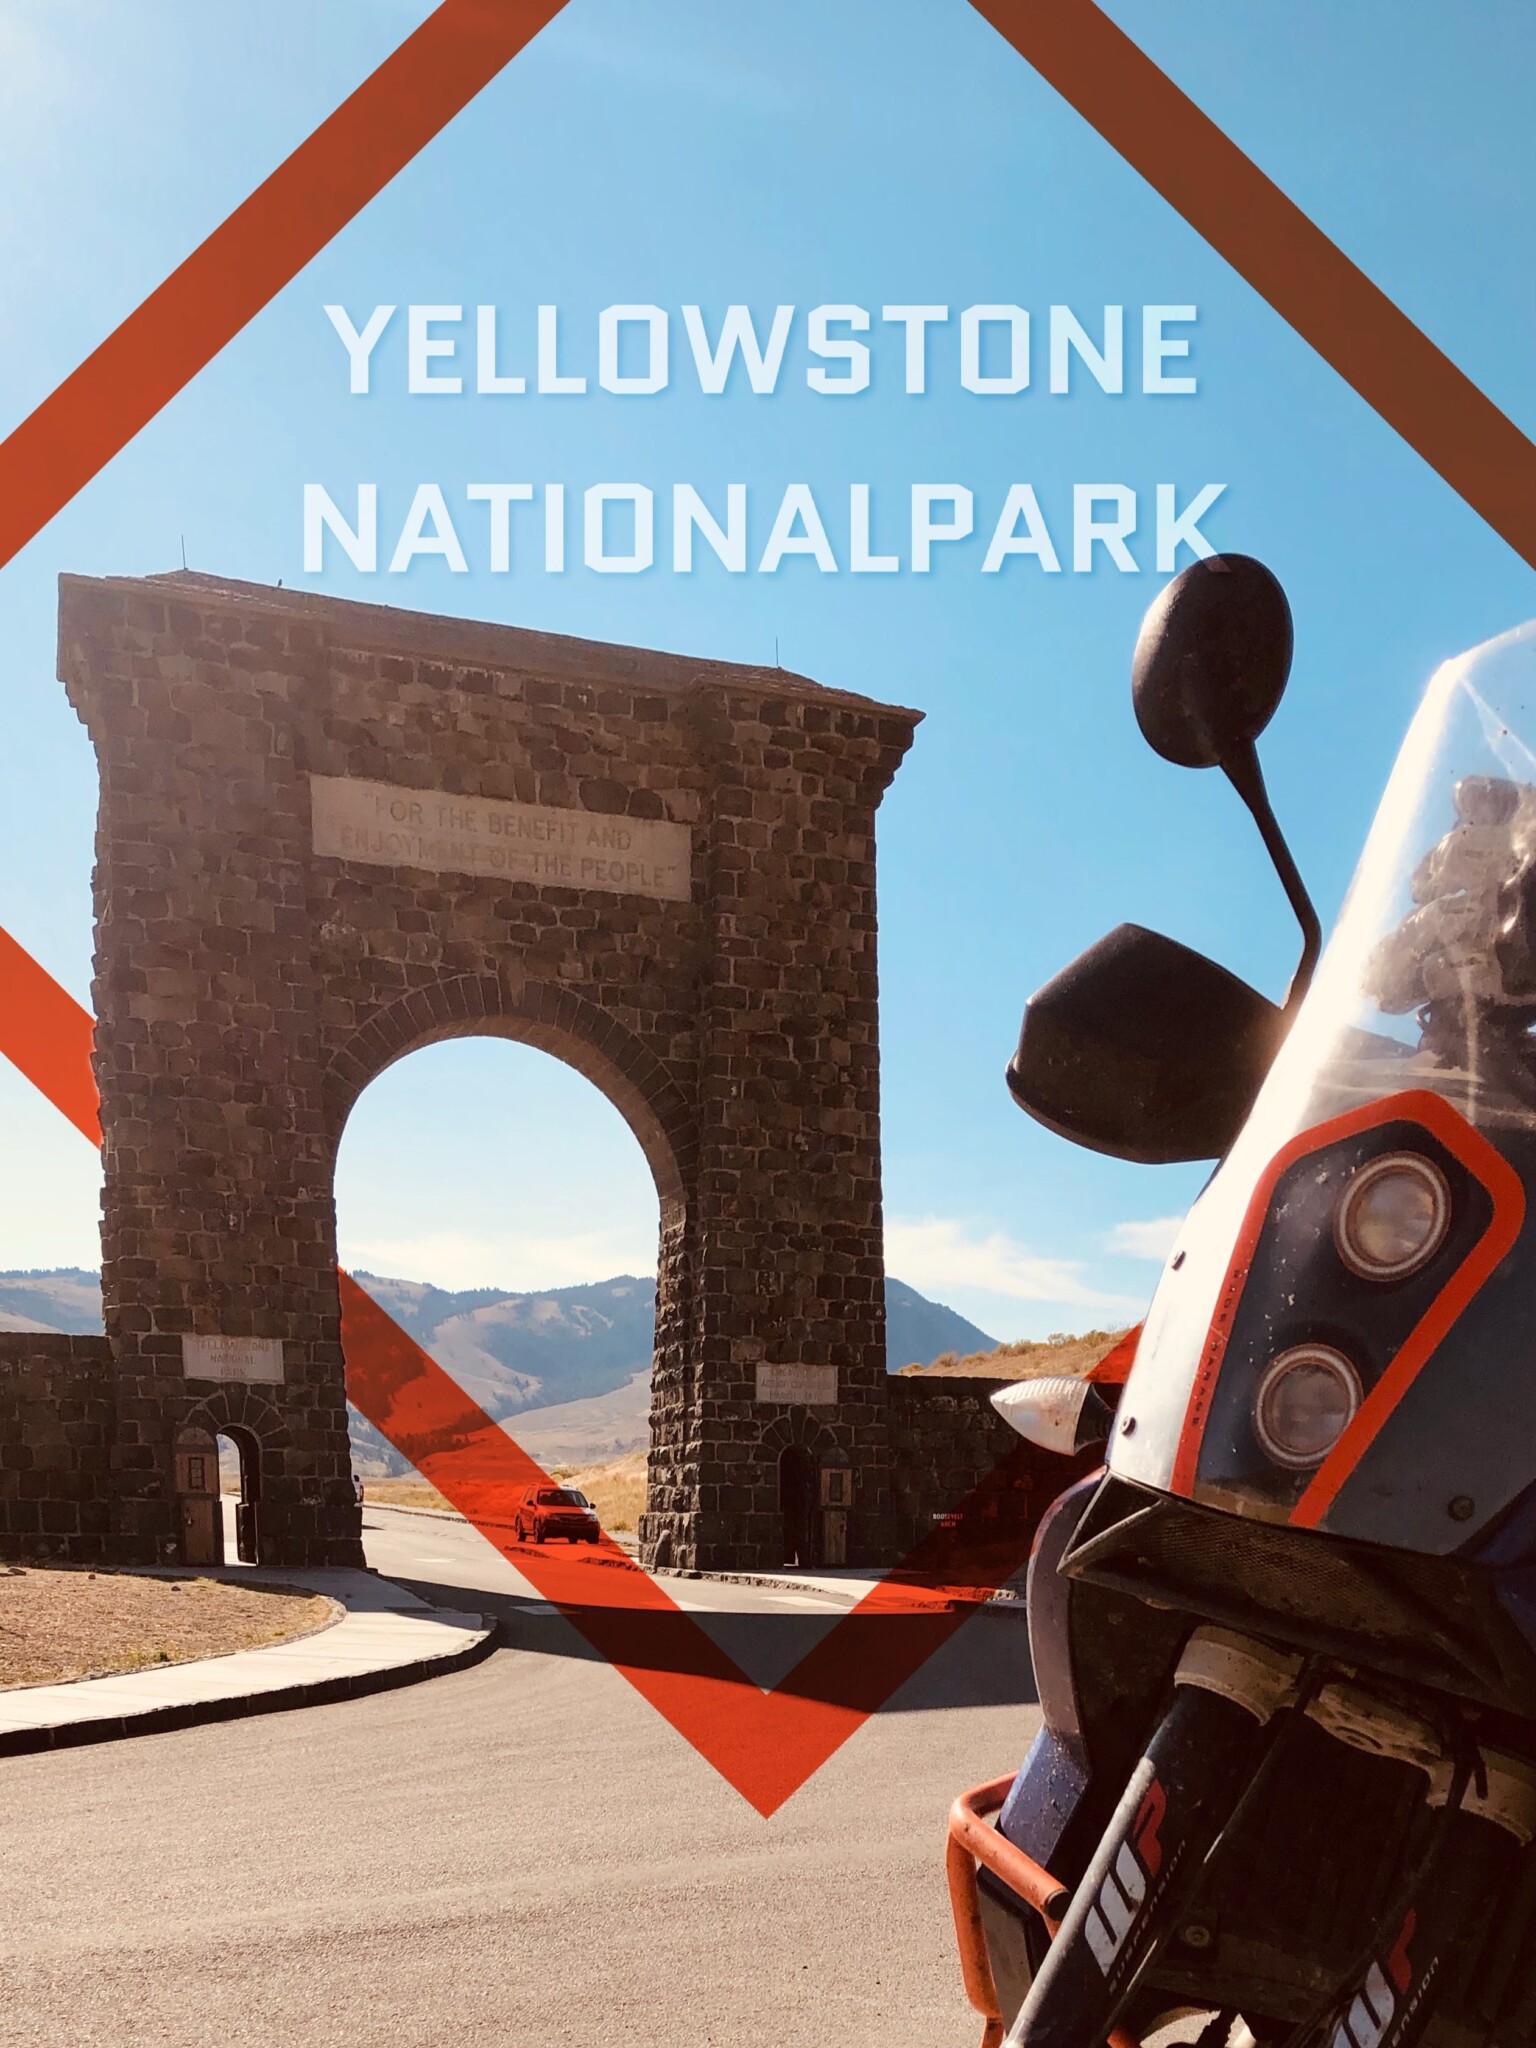 Yellowstone Nationalpark, USA